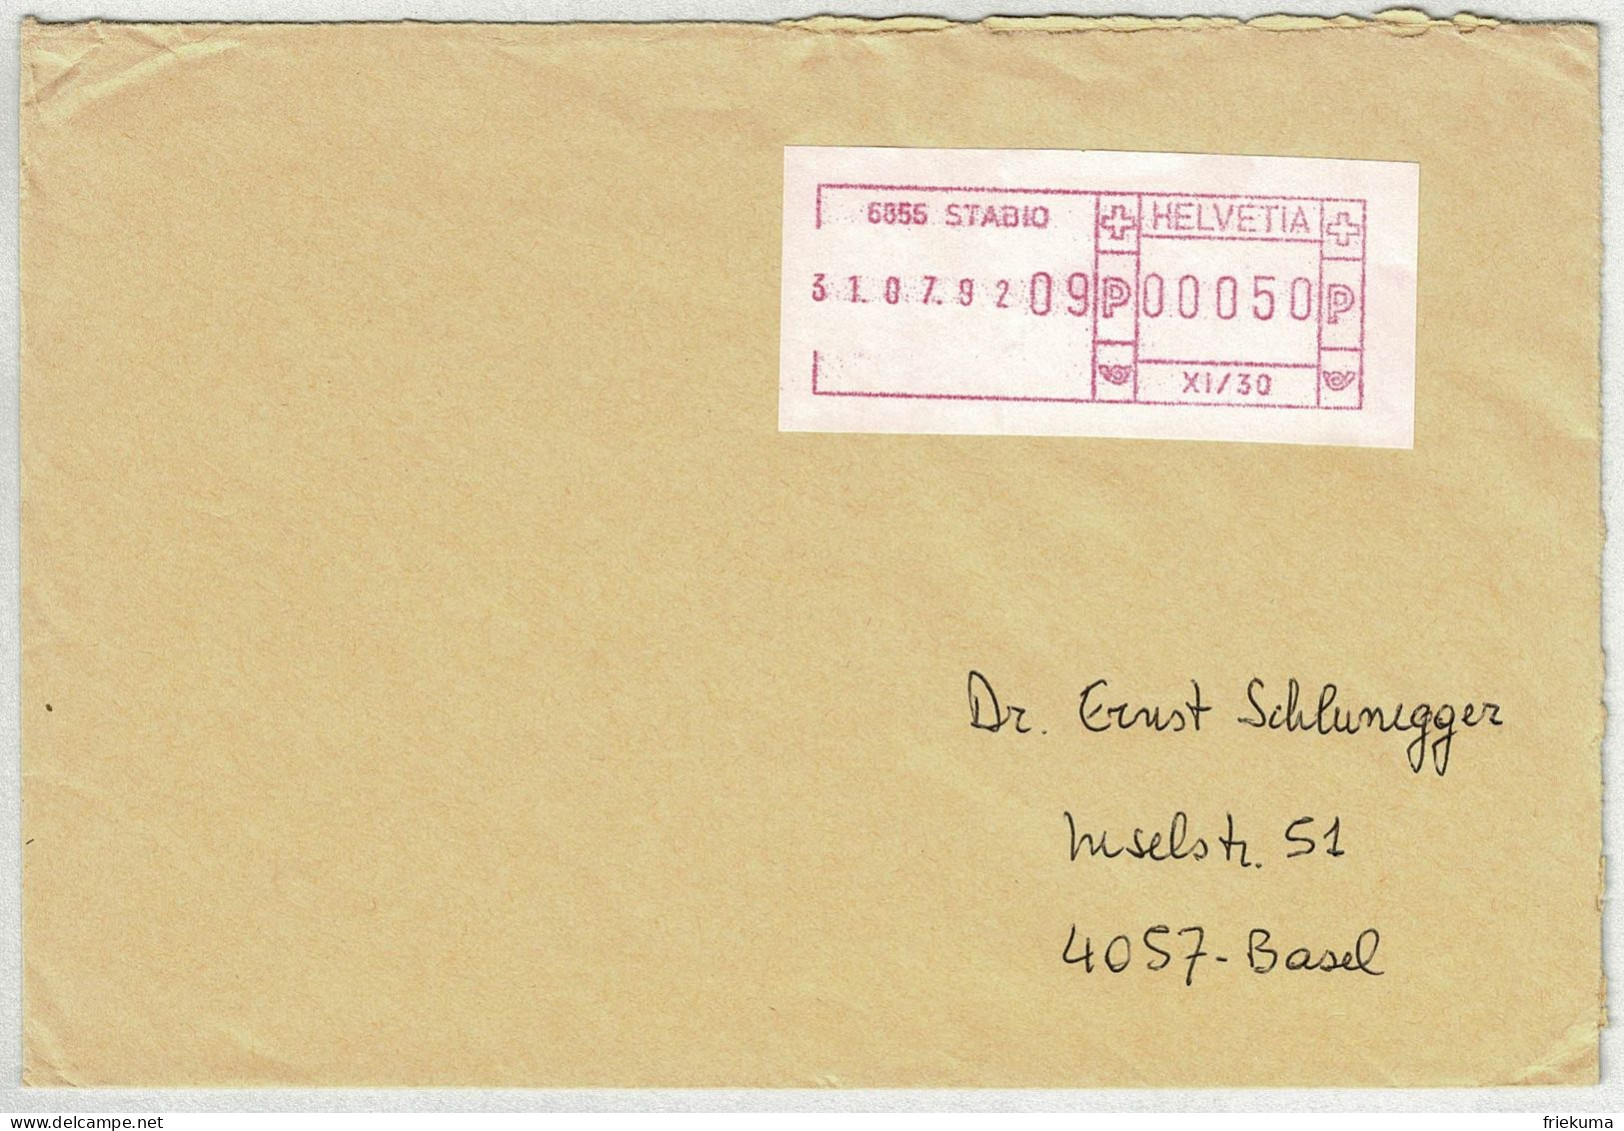 Schweiz 1992, Brief Stabio - Basel, Schalterfreistempel  - Automatenzegels